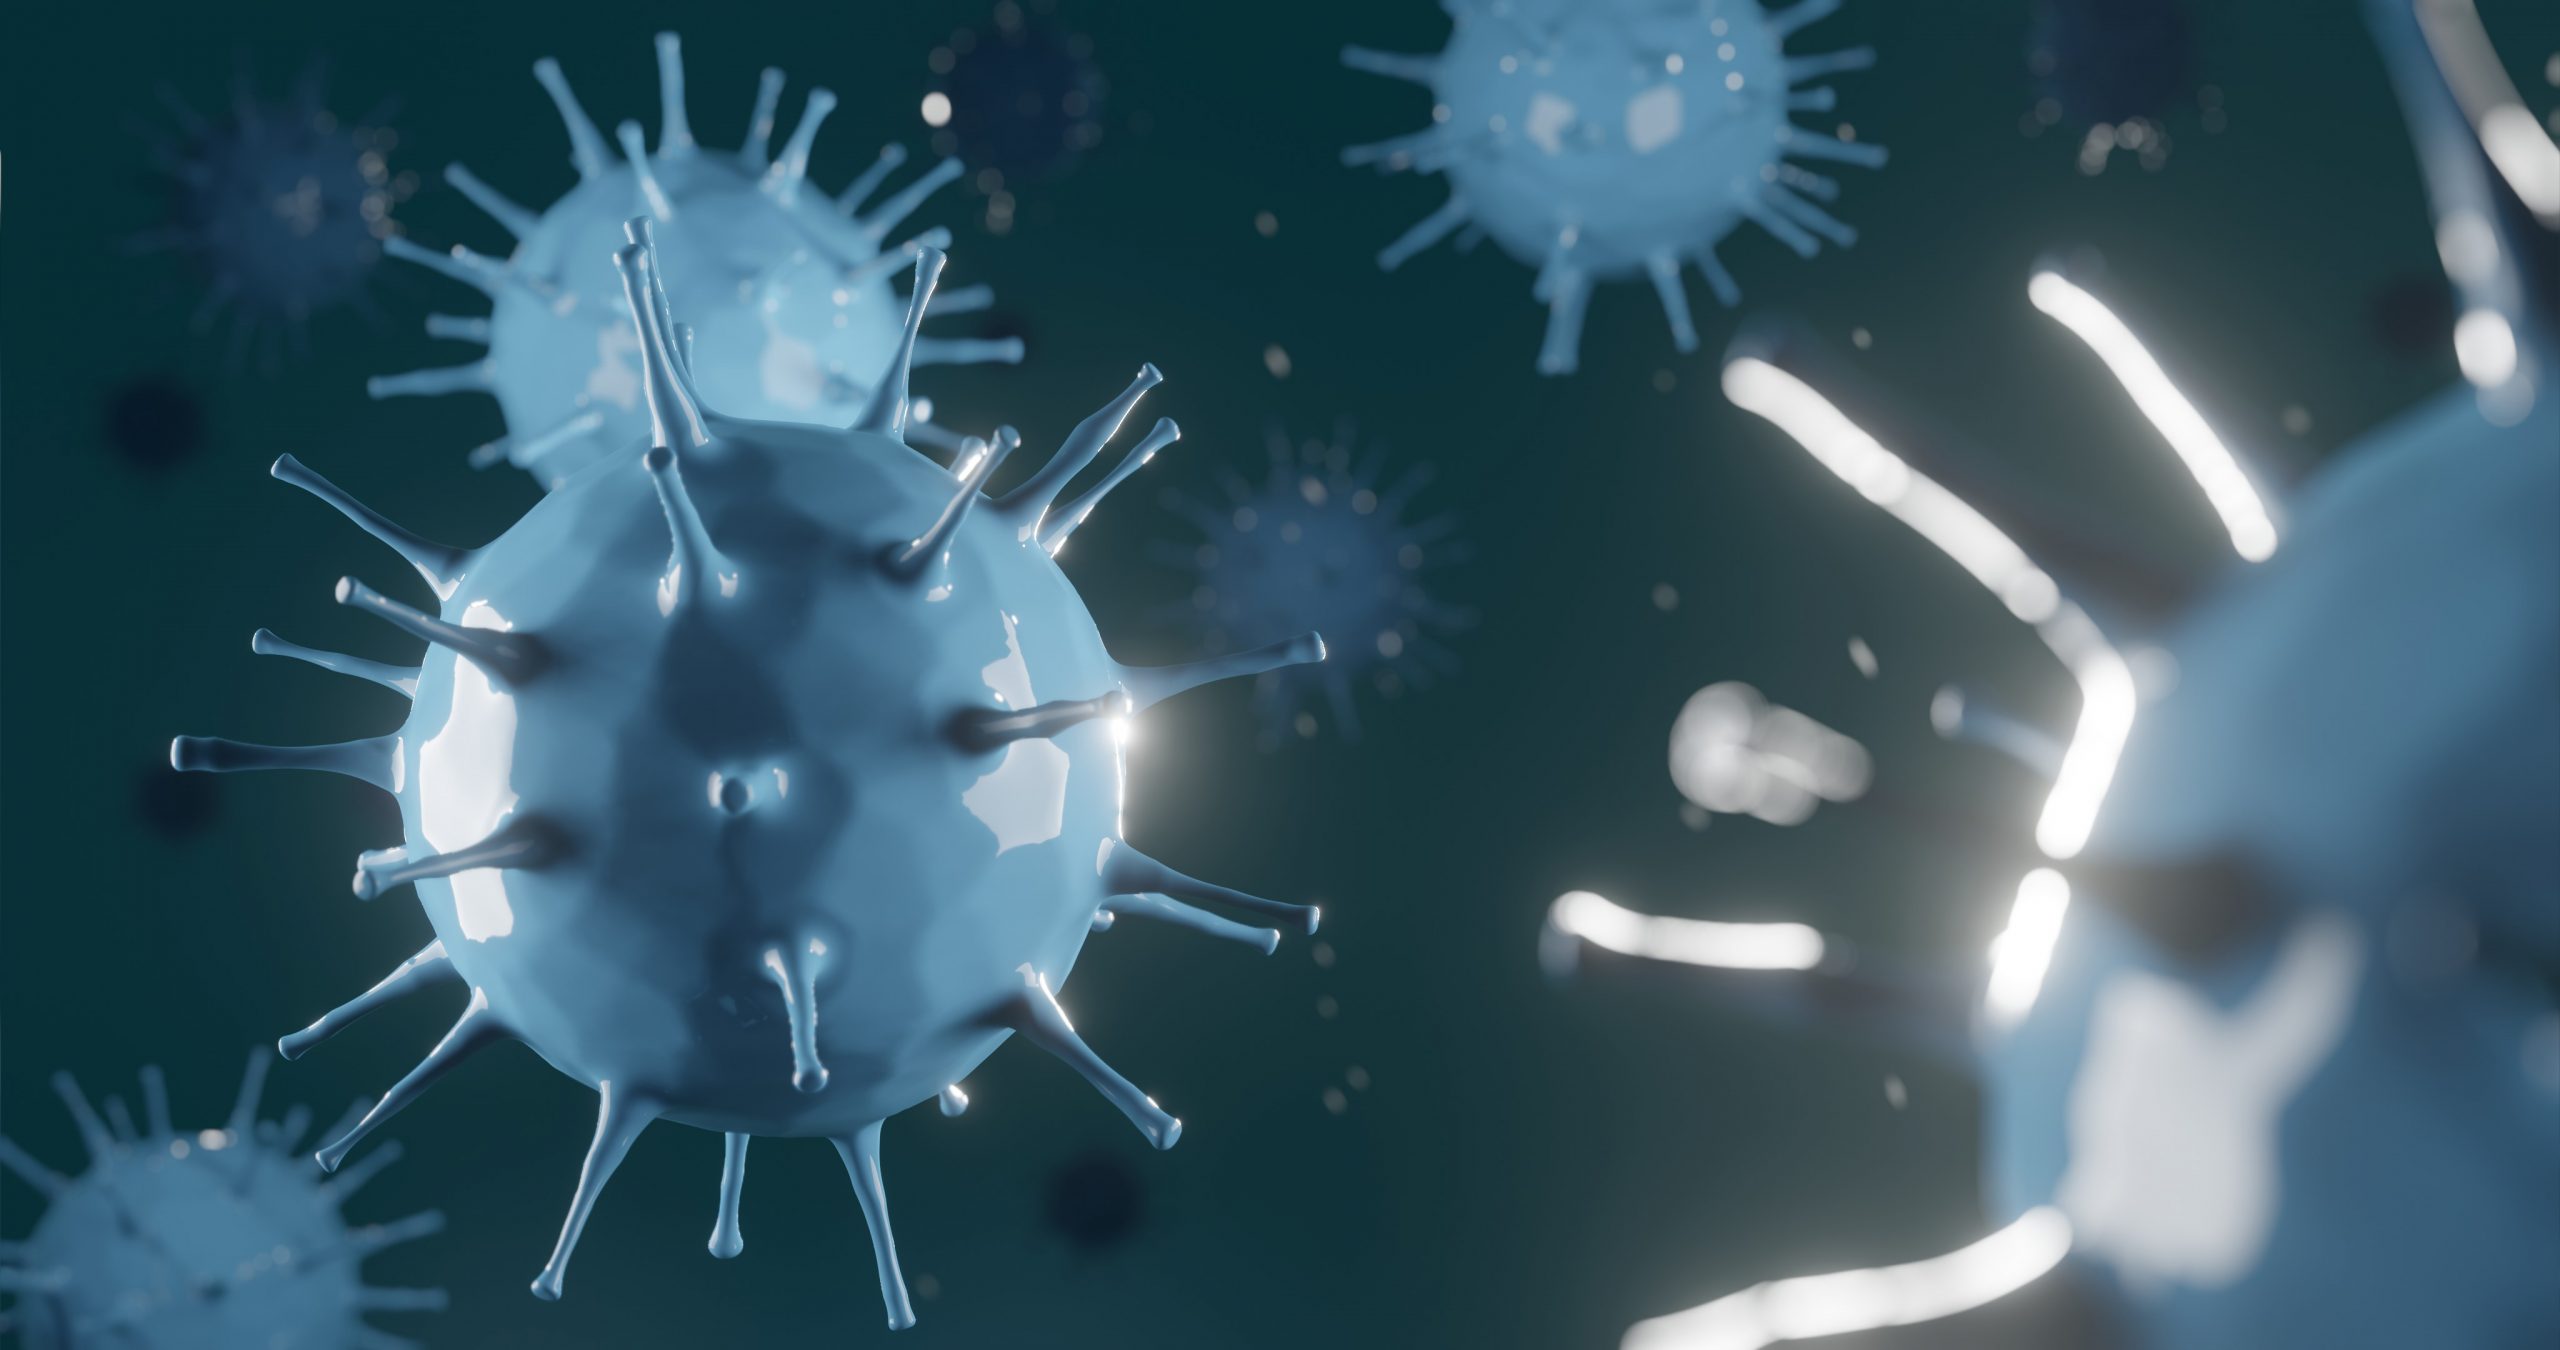 Вирус гриппа под. Вирус гриппа h1n1. Вирус гриппа под микроскопом h1n1. Вирус гриппа под микроскопом и коронавирус. Вирус свиного гриппа (h1n1).